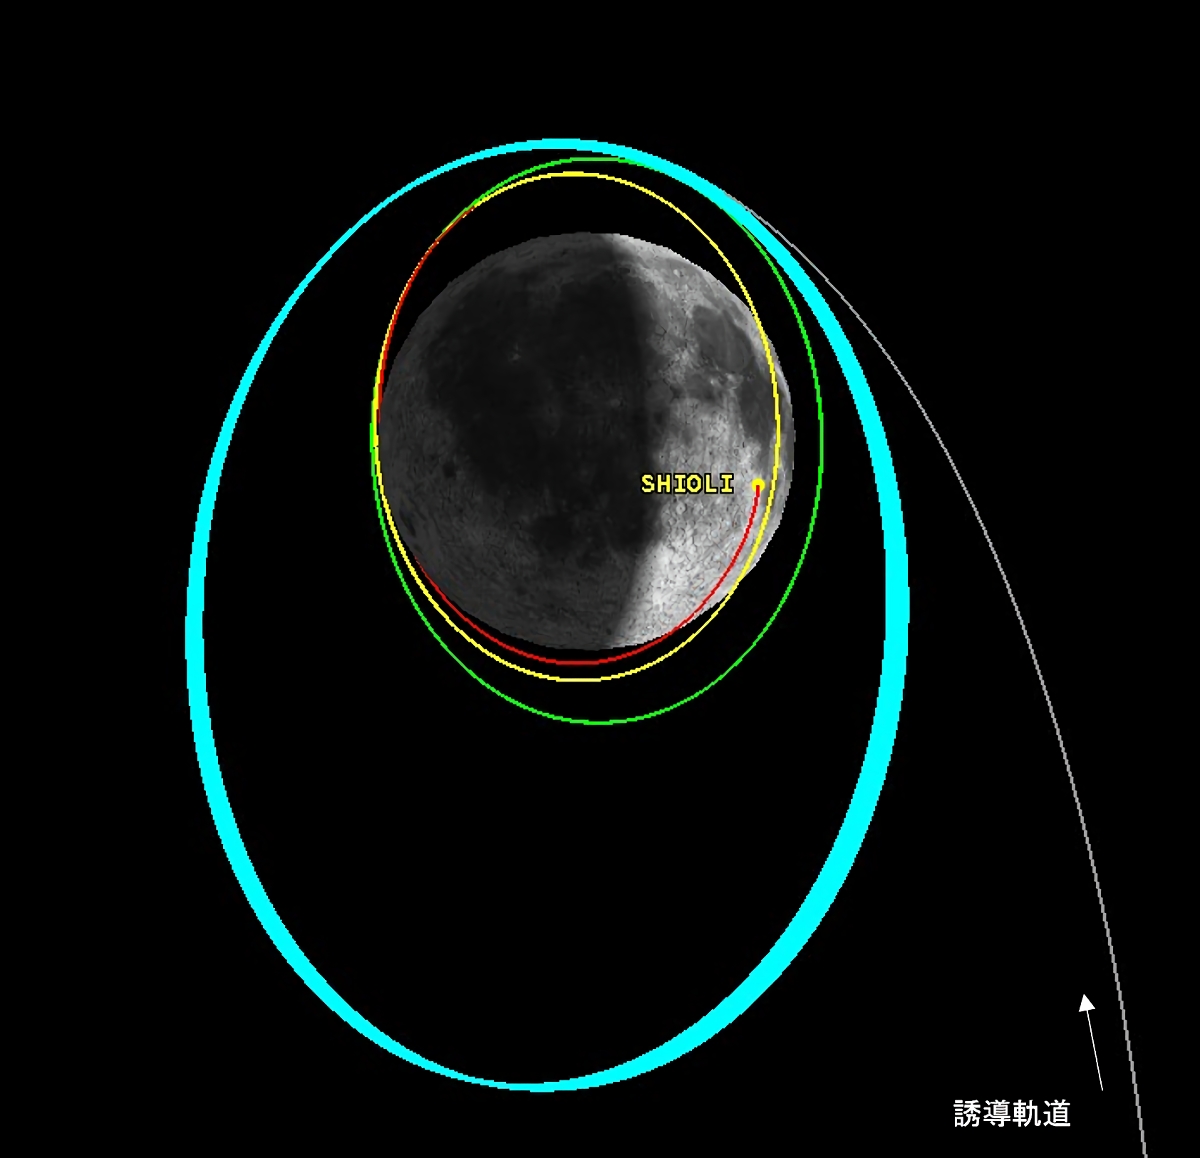 月周回軌道の模式図。水色が現在の周回軌道、緑色が高度約600kmの円軌道、黄色が高度約600km×約150kmの楕円軌道、赤色が高度約600km×約15kmの楕円軌道（出典：JAXA）